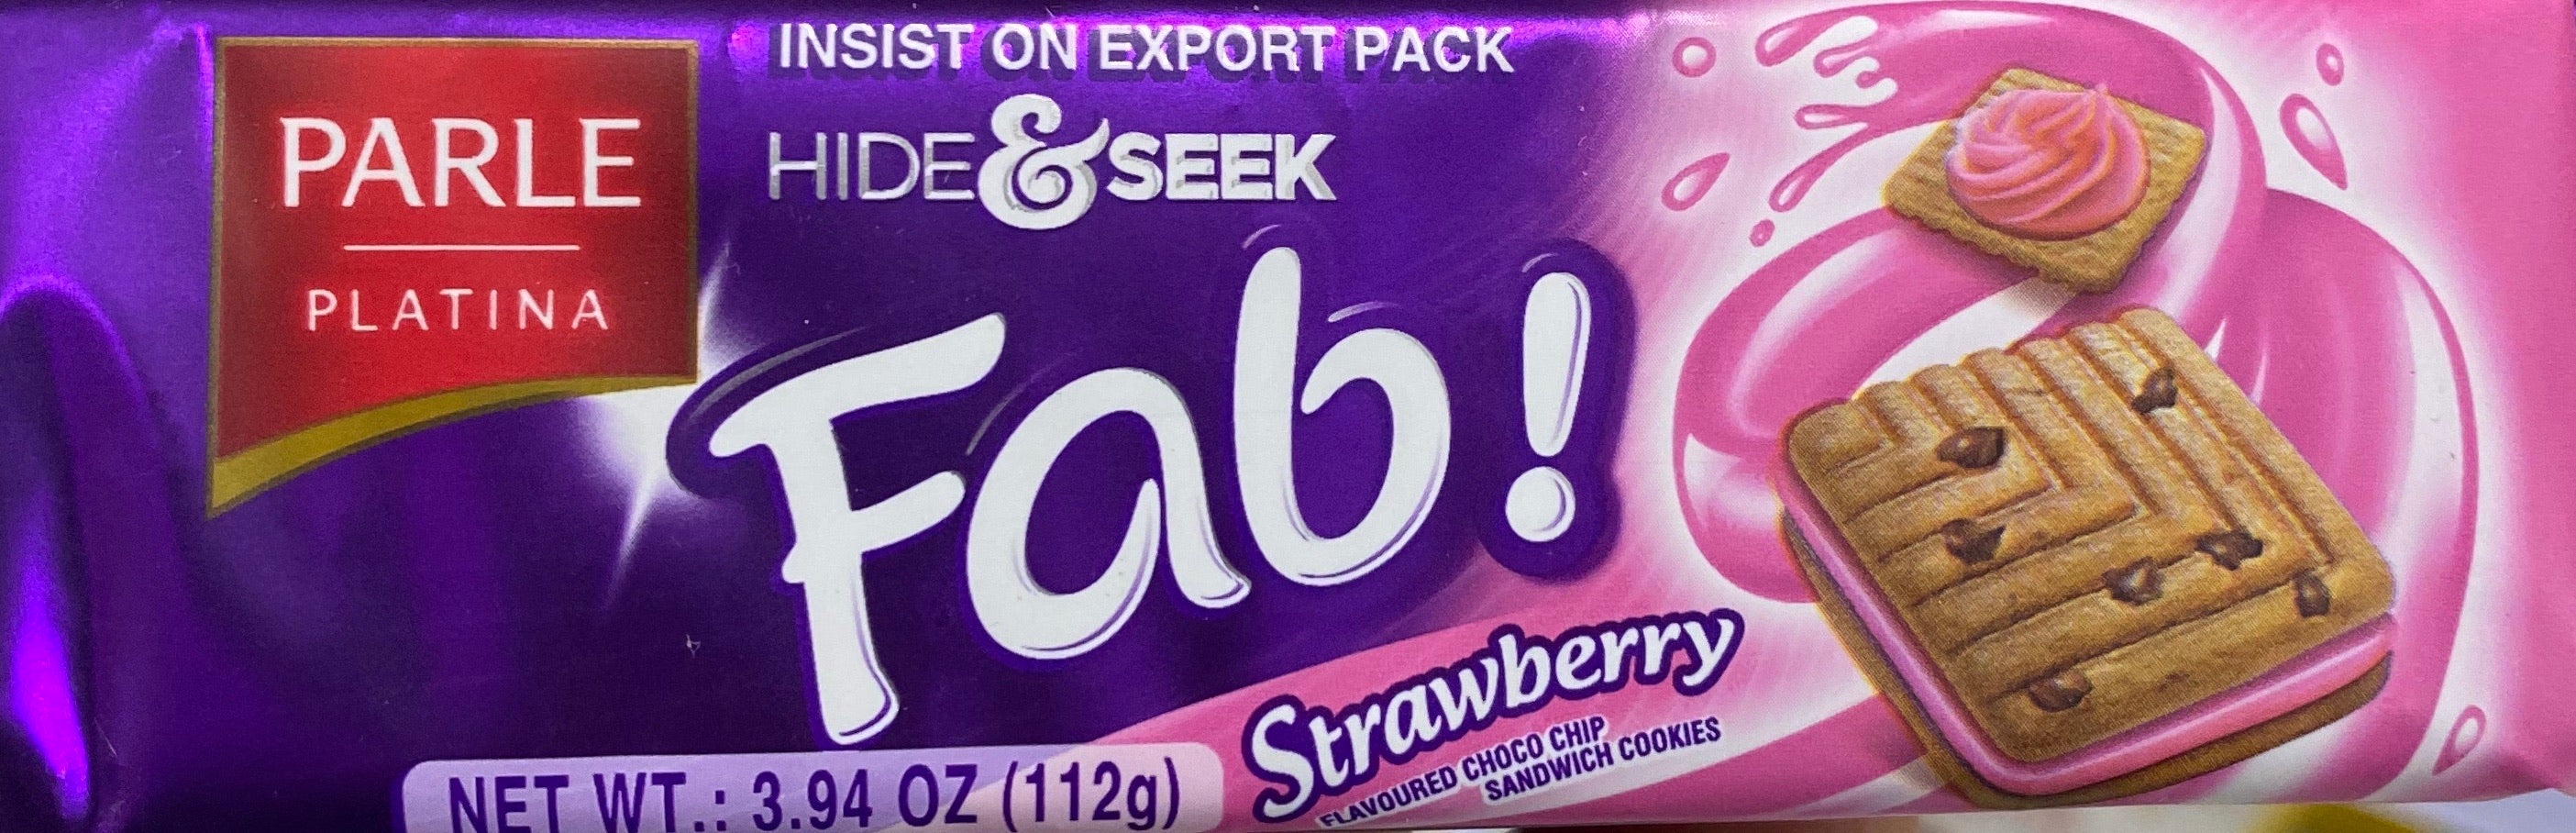 Parle hide & seek Fab Strawberry biscuits